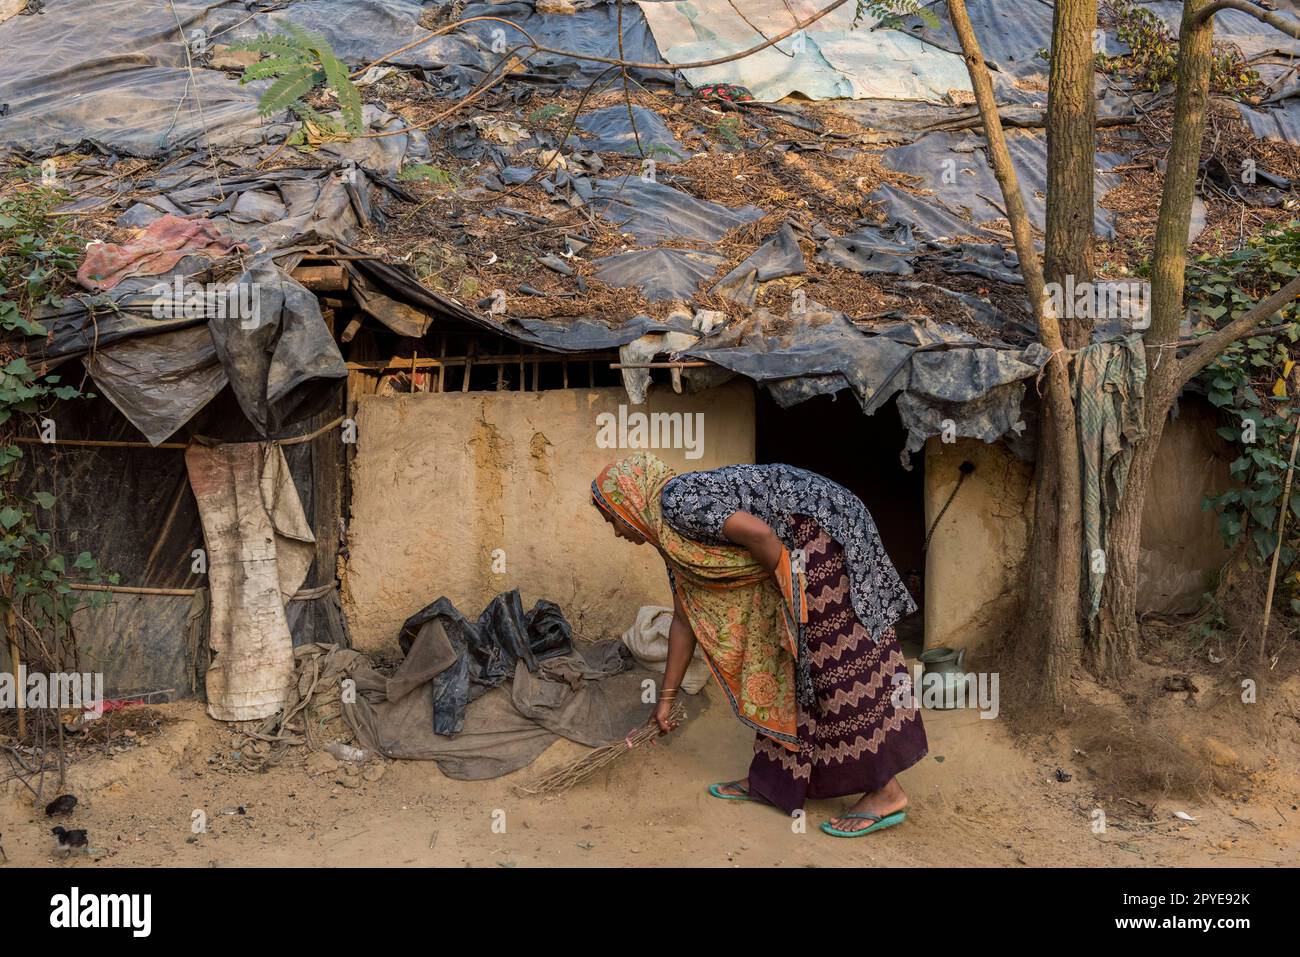 Bangladesh, Bazar di Cox. Una donna scopa il suo punto di vista nel campo profughi di Kutupalong Rohingya. Marzo 24, 2017. Solo per uso editoriale. Foto Stock